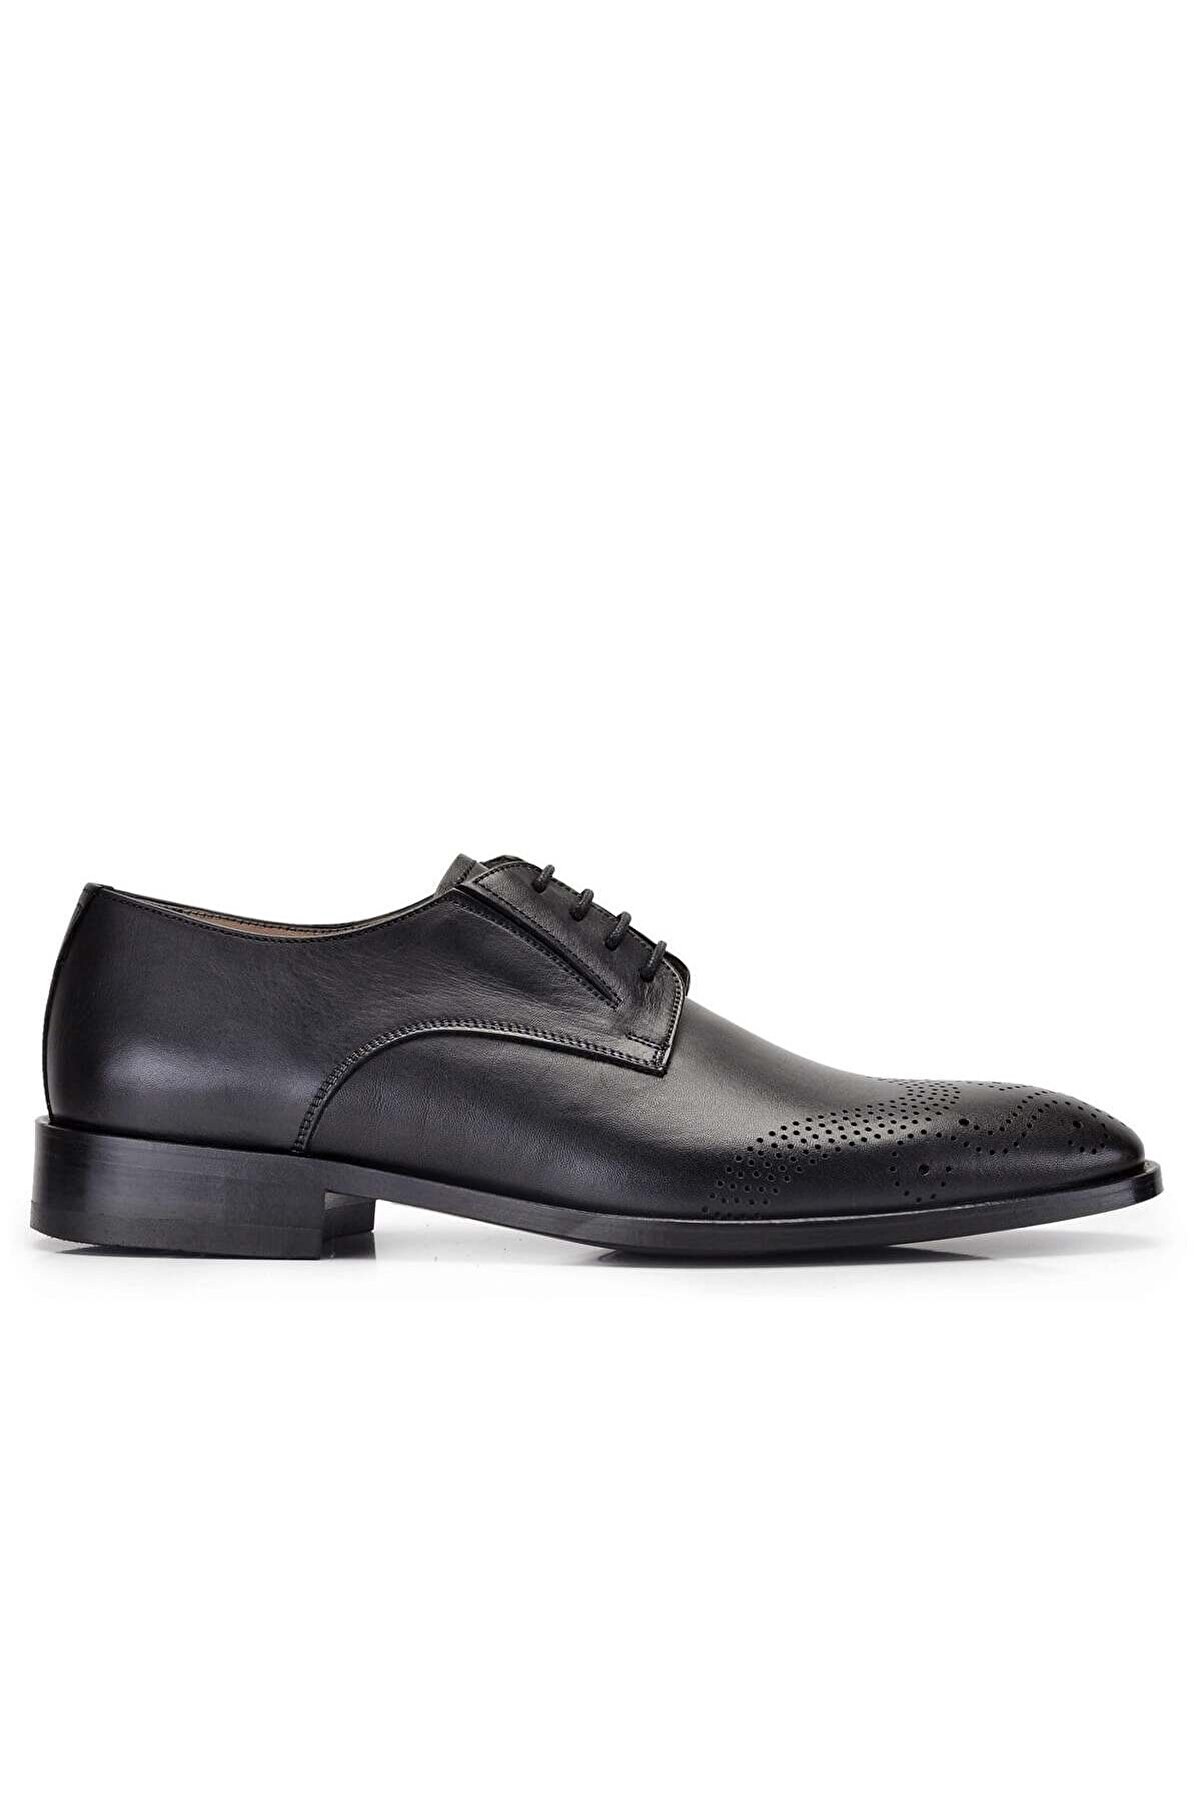 Nevzat Onay Siyah Klasik Bağcıklı Kösele Erkek Ayakkabı -9407-